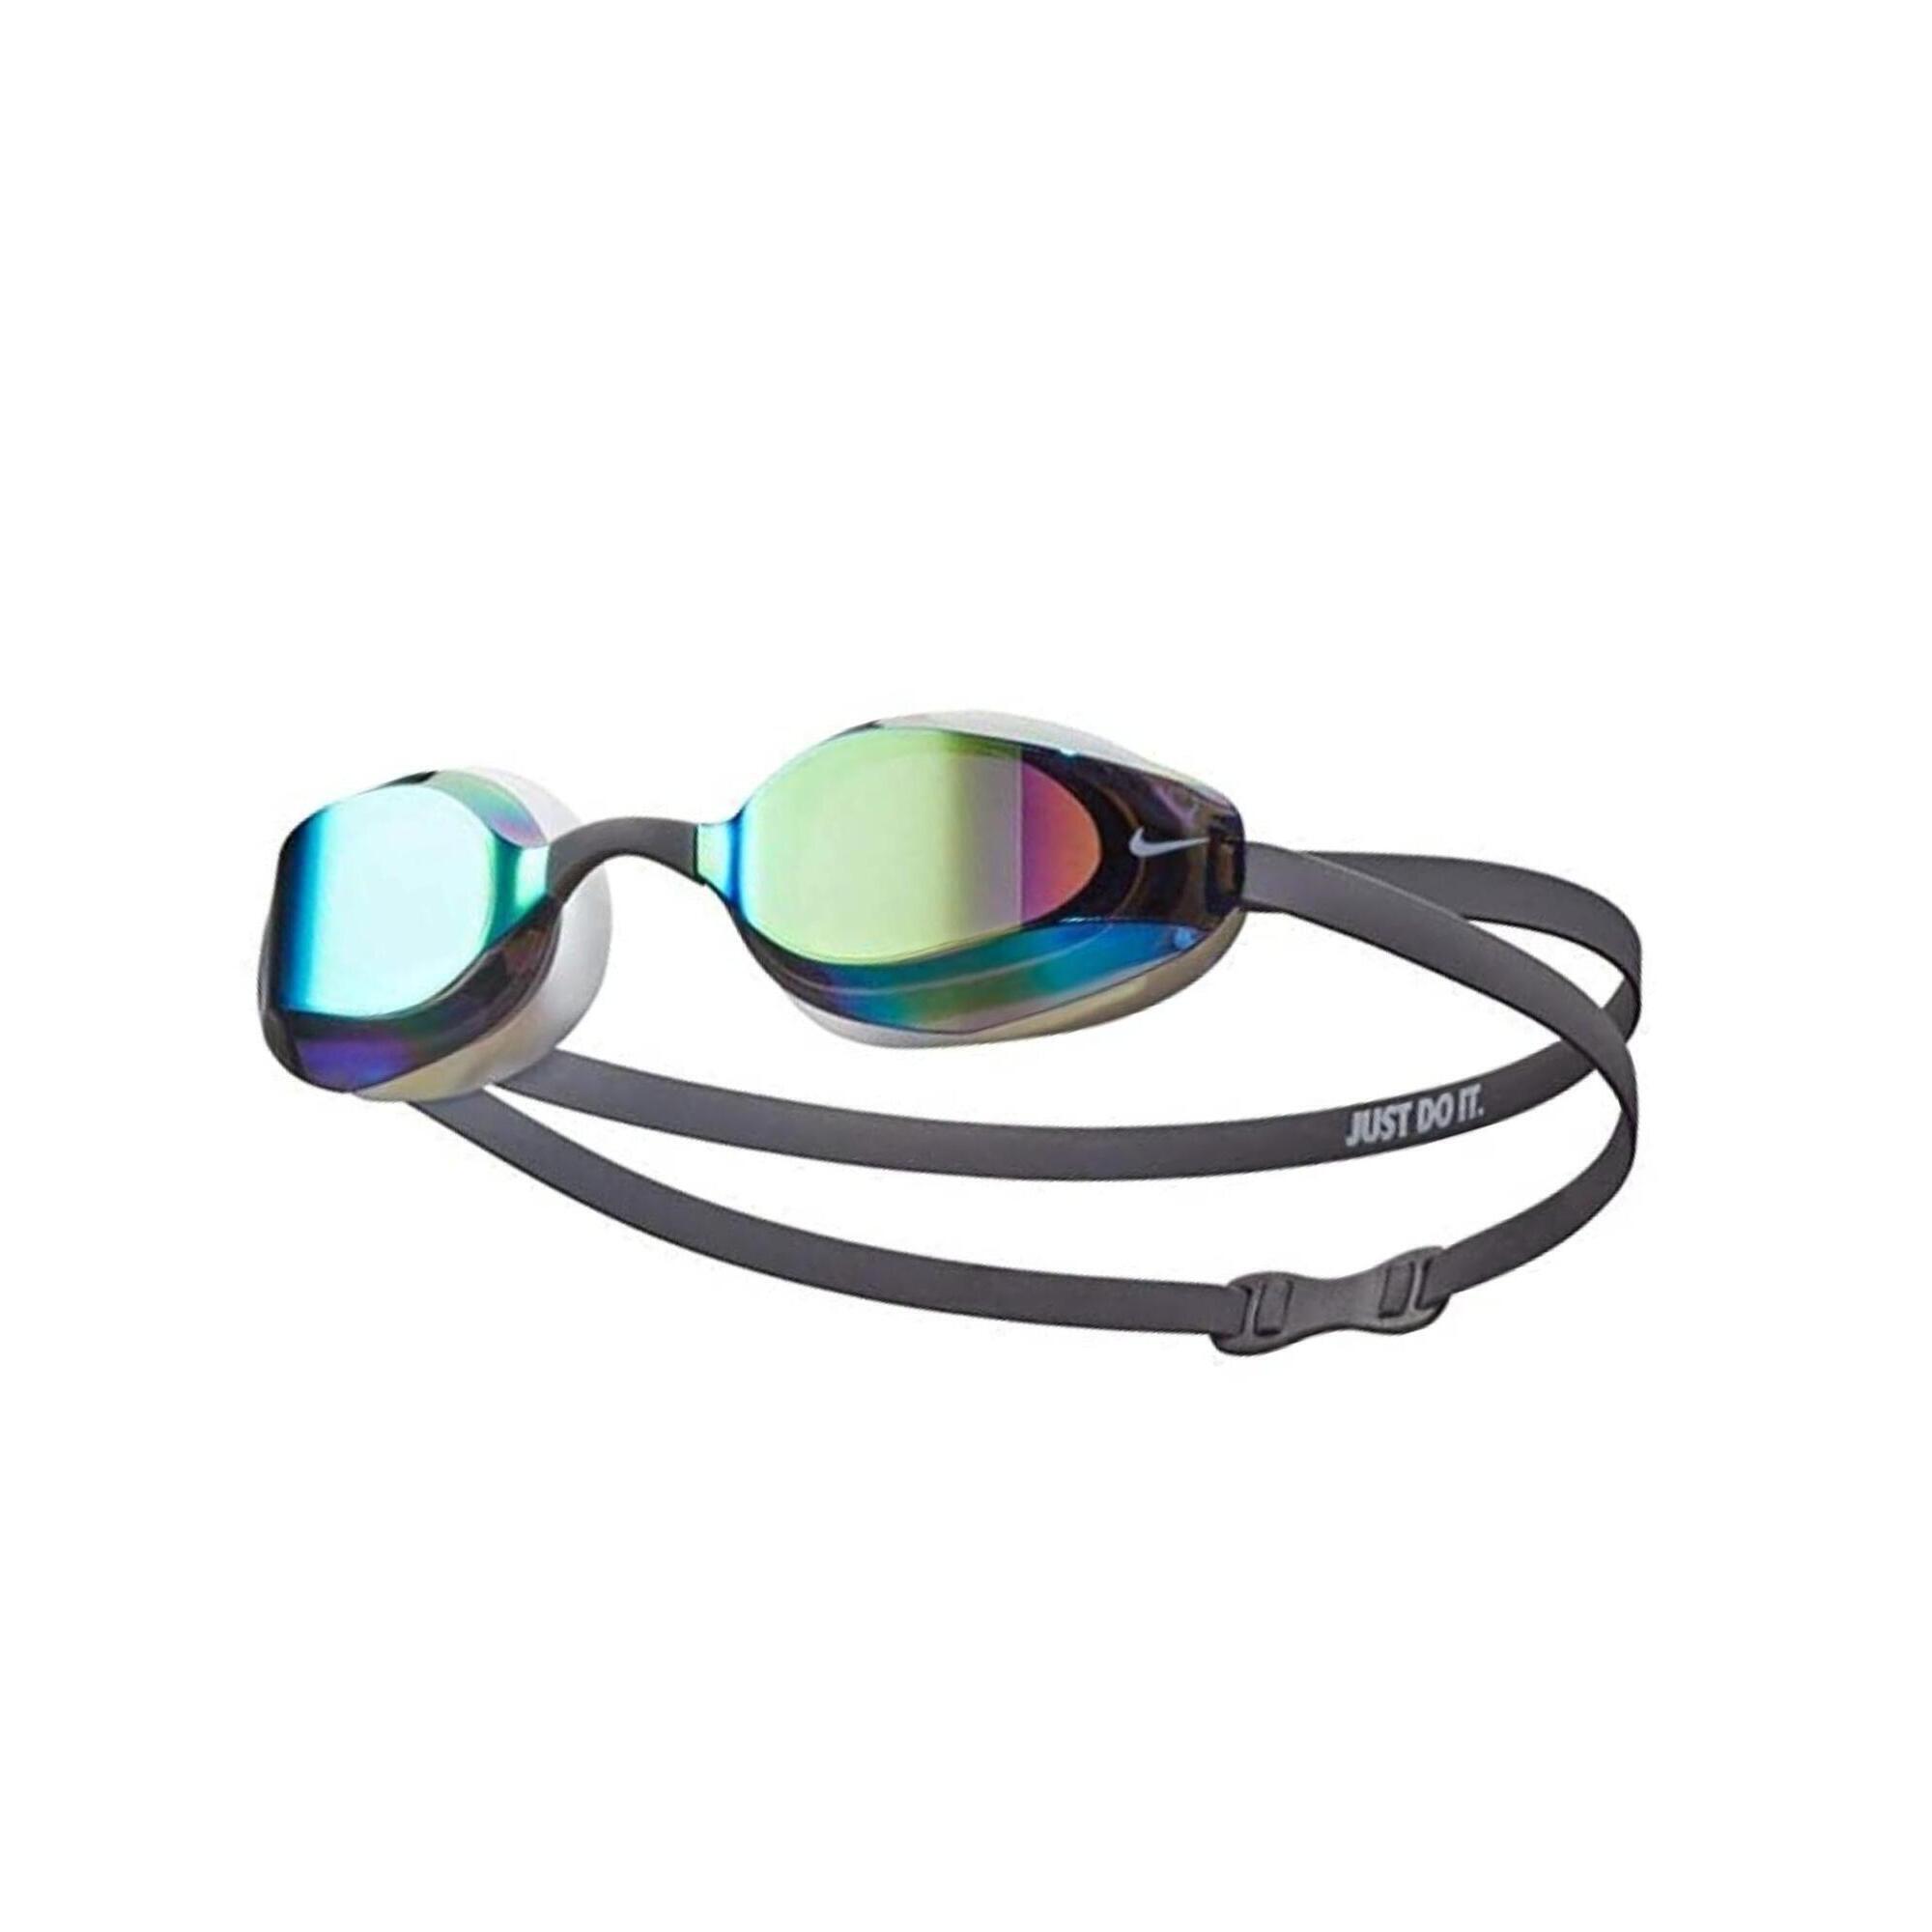 Swim vapor mirror goggle men's swimming swimming goggle 1/5